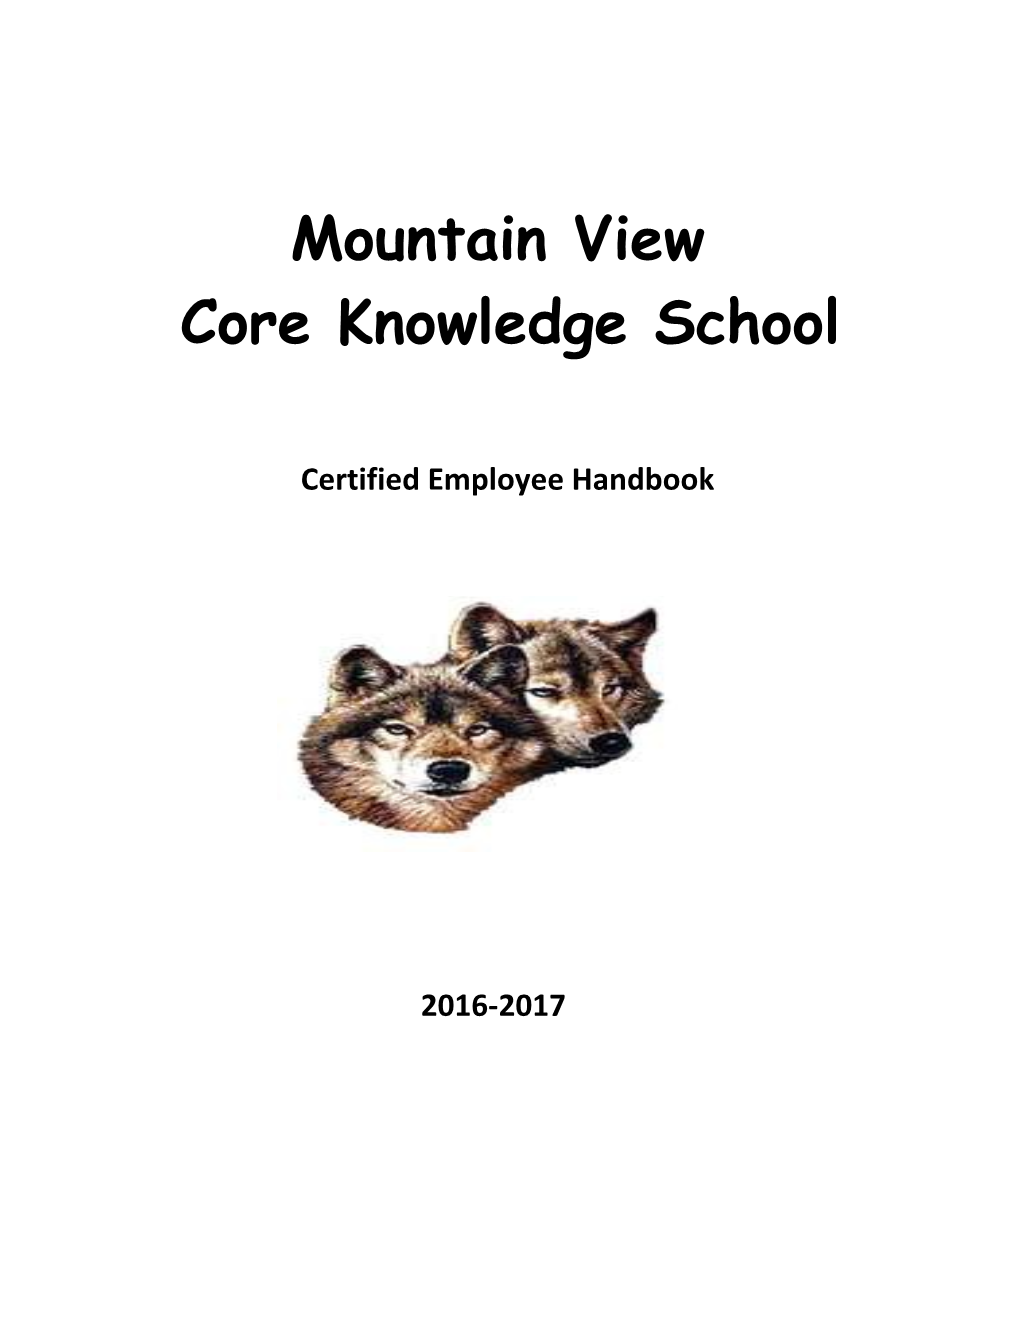 Core Knowledge School